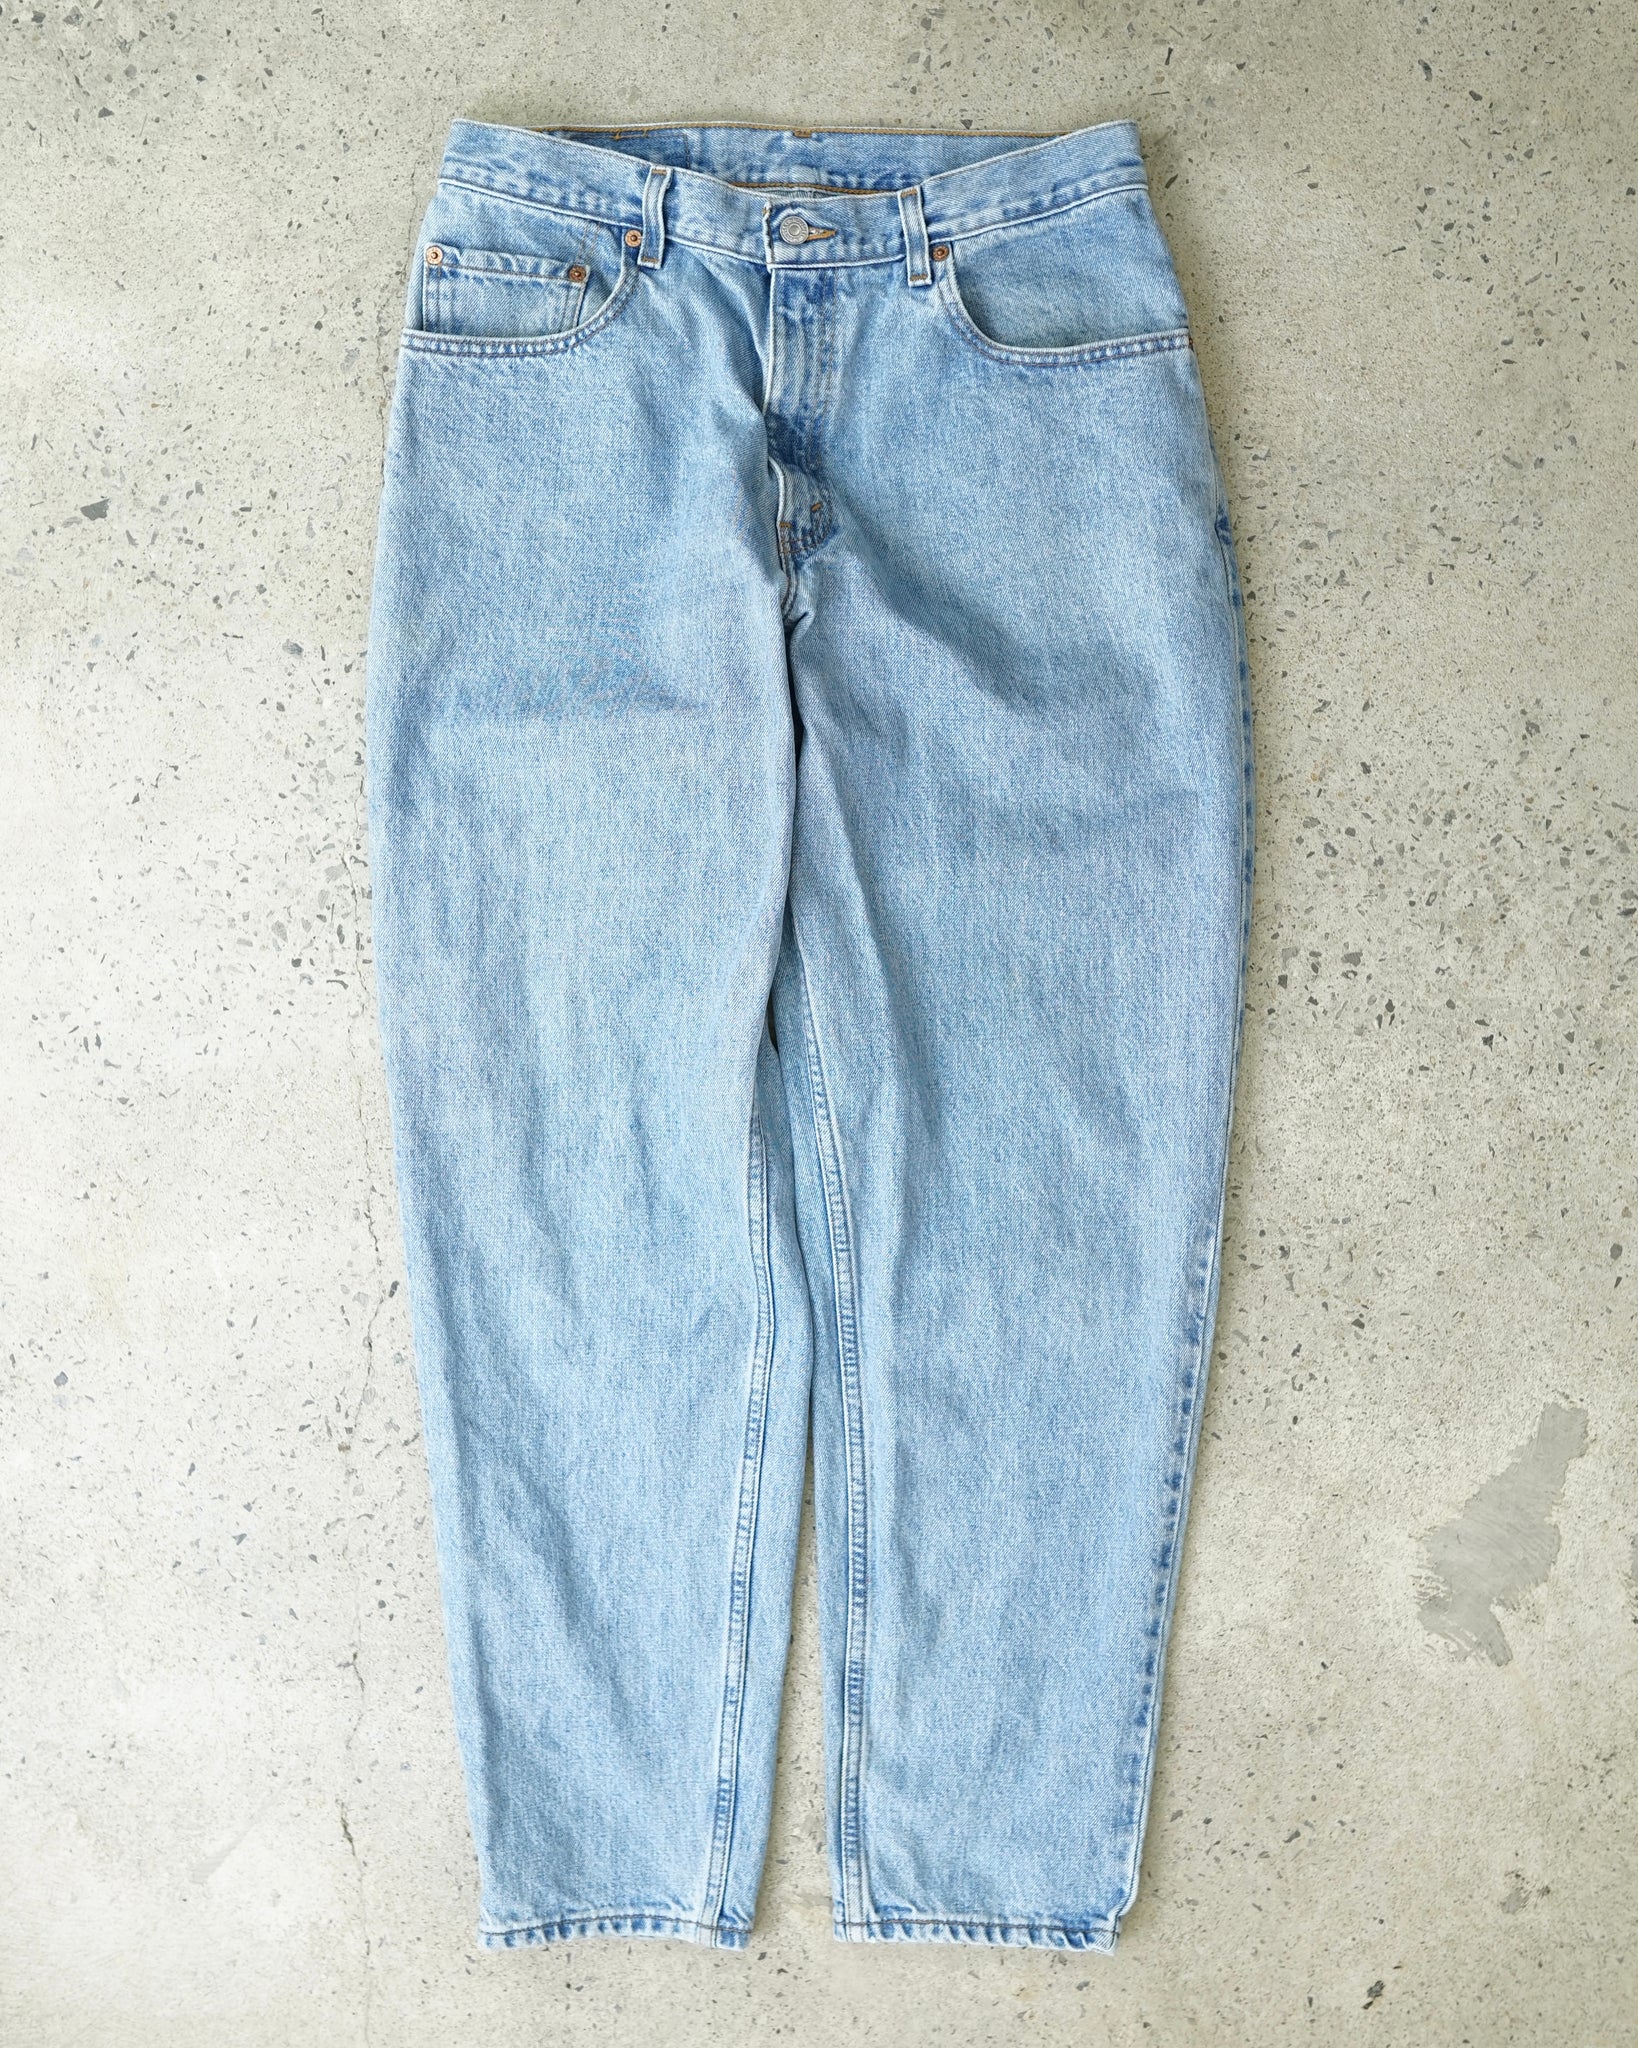 levi's 560 jeans